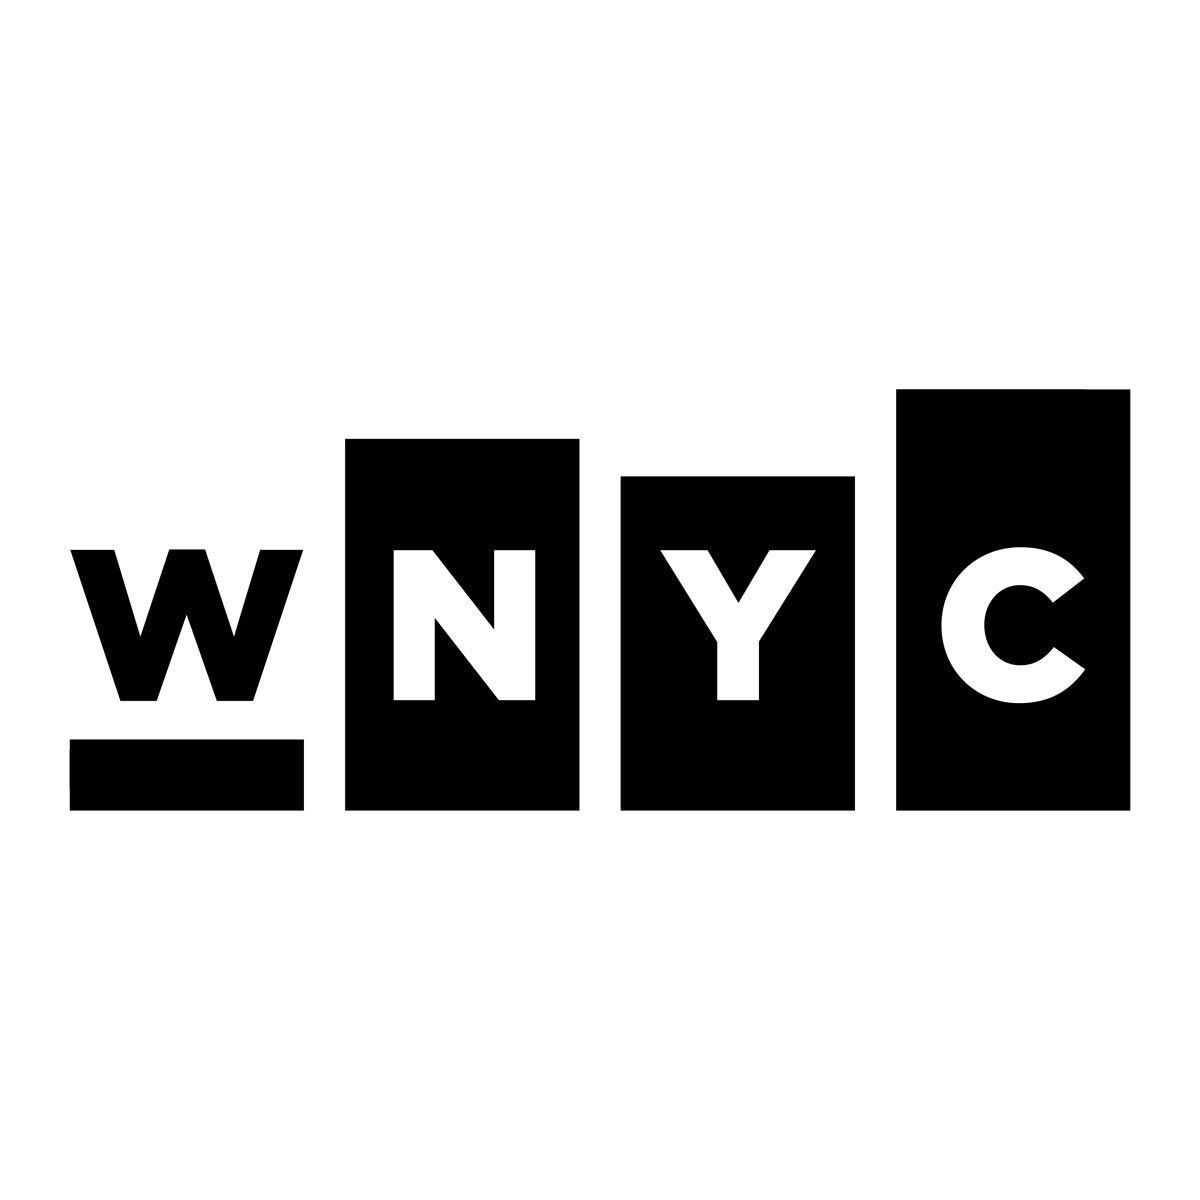 WNYC (logo)